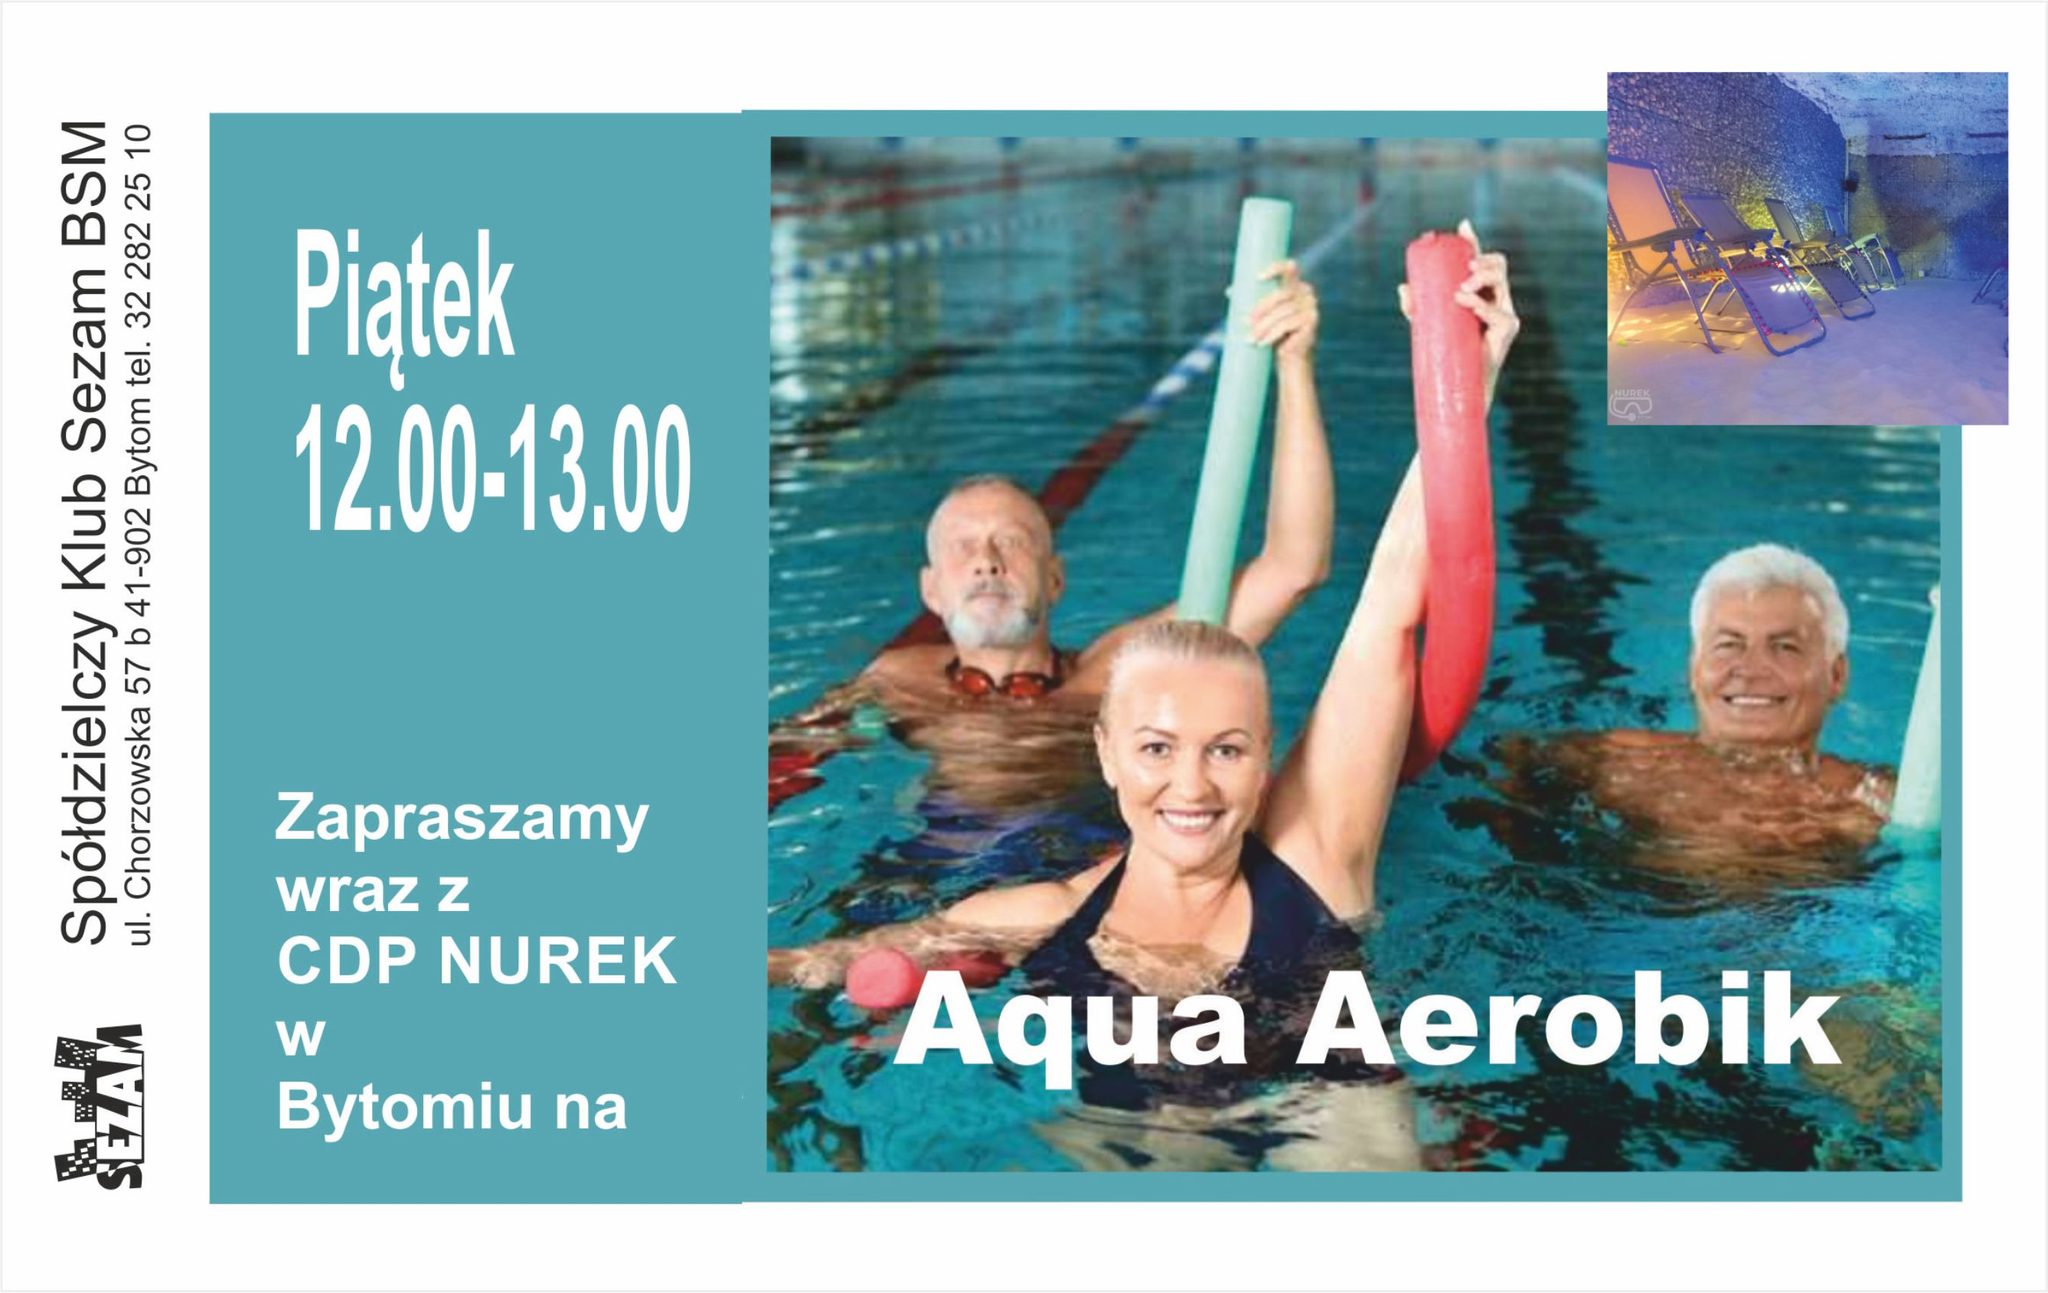 Aqua-aerobik